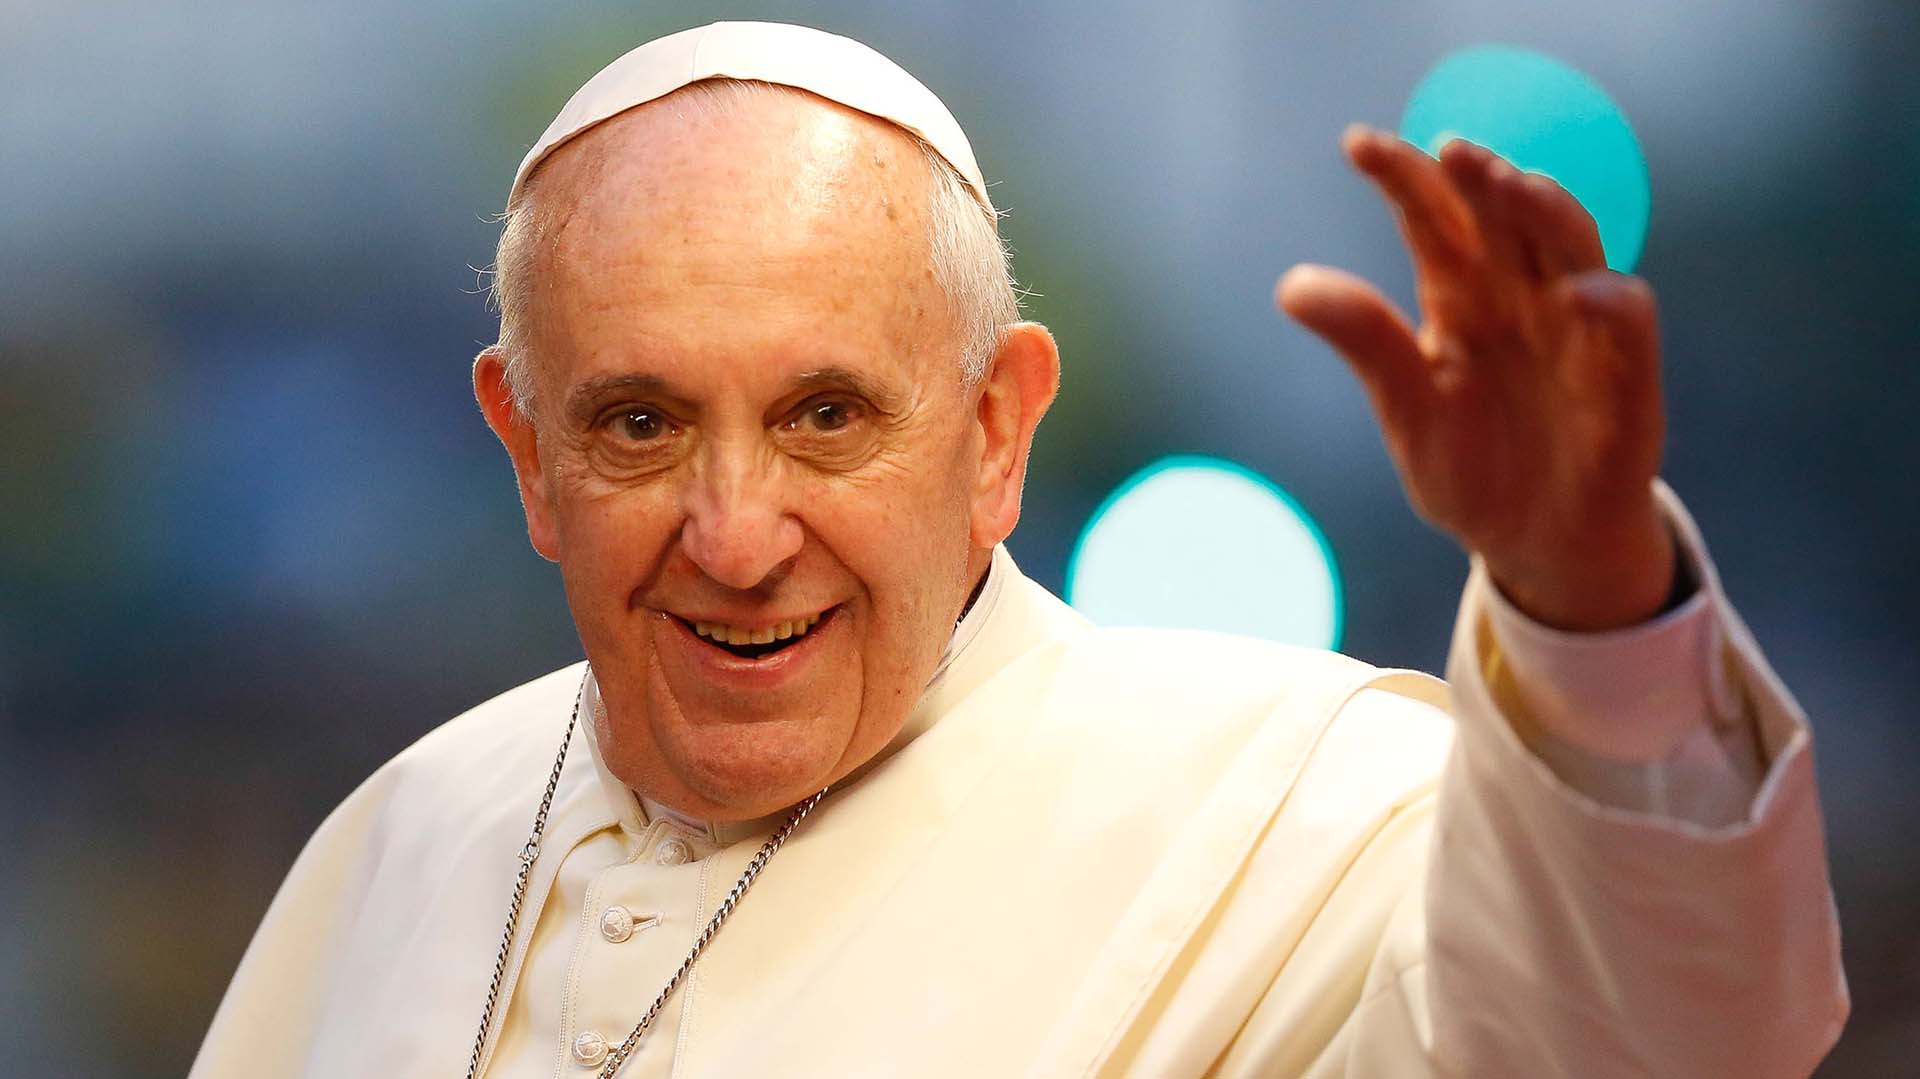 “Si la política no aprovecha la oportunidad dada por el papa Francisco, pierde una ocasión histórica” (Massimo D'Alema, ex premier italiano)